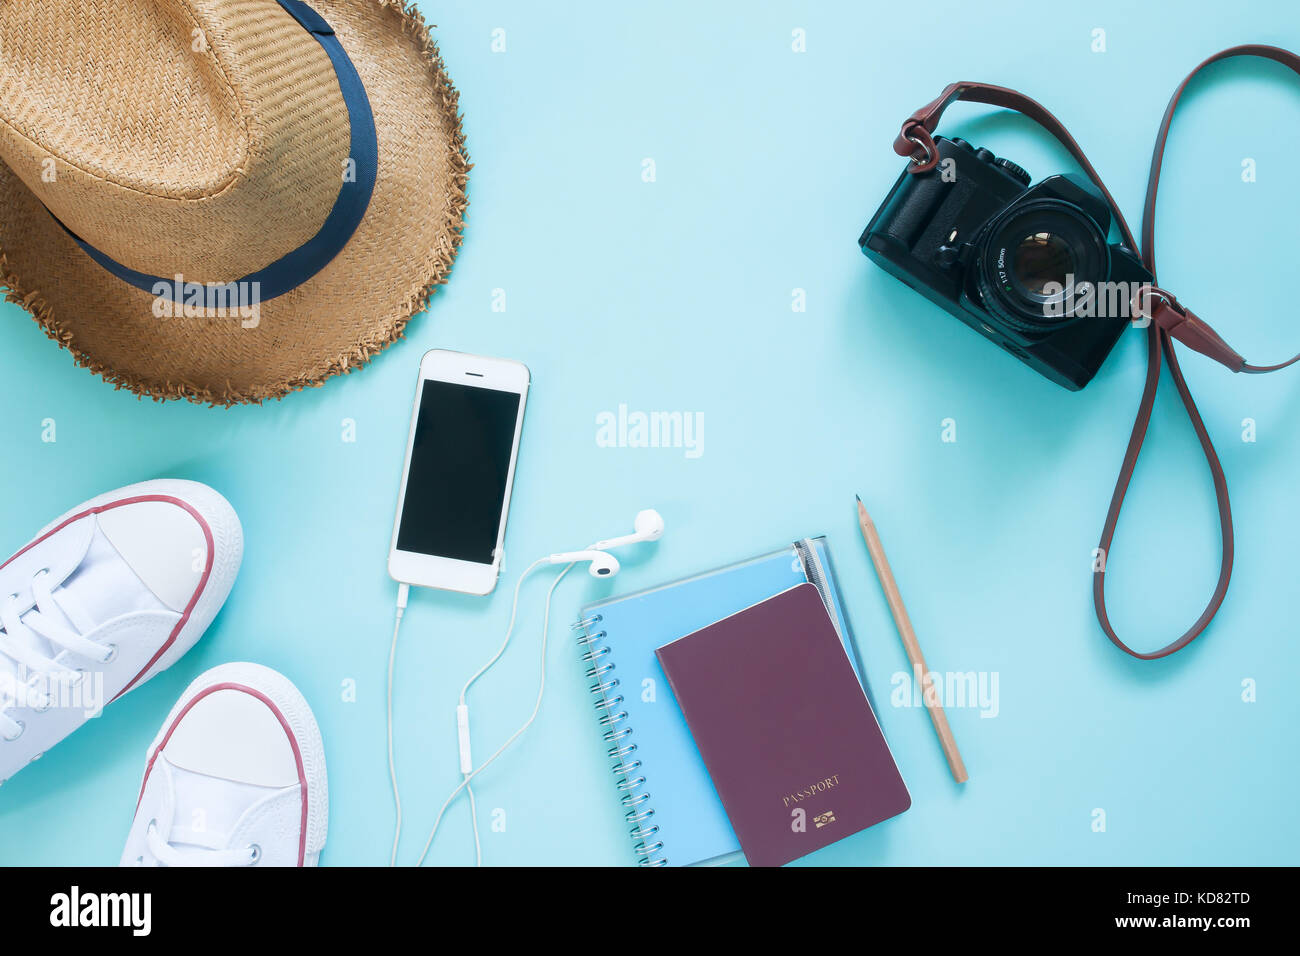 Piatto di laici articoli da viaggio con il dispositivo mobile, passaporto e fotocamera su color pastello sullo sfondo Foto Stock